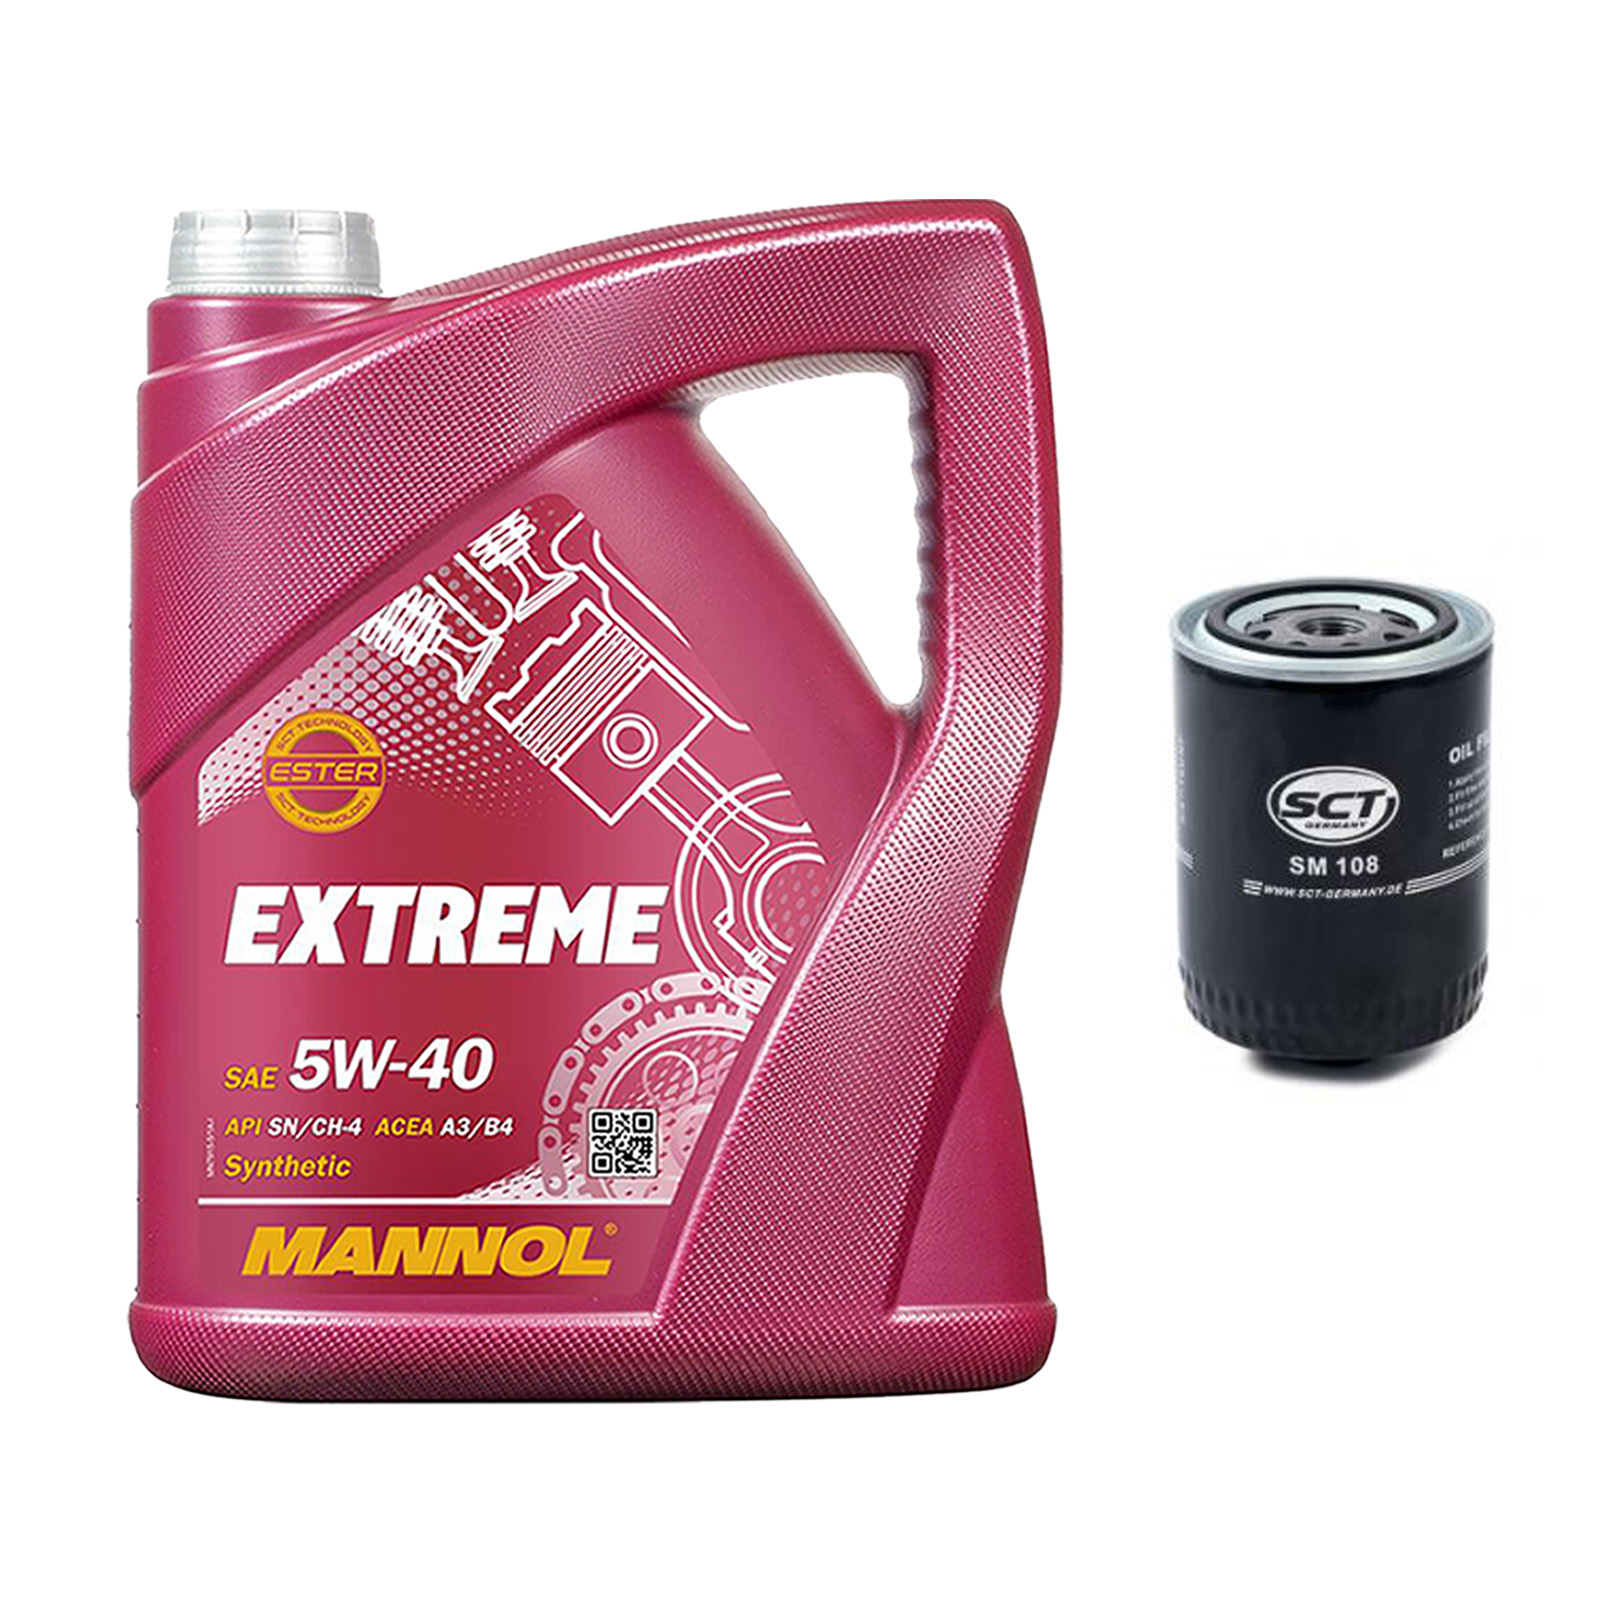 Inspektionskit MANNOL Extreme 5W-40 für Vw Passat 1.9 Td Golf Iii D Tdgtd Vento